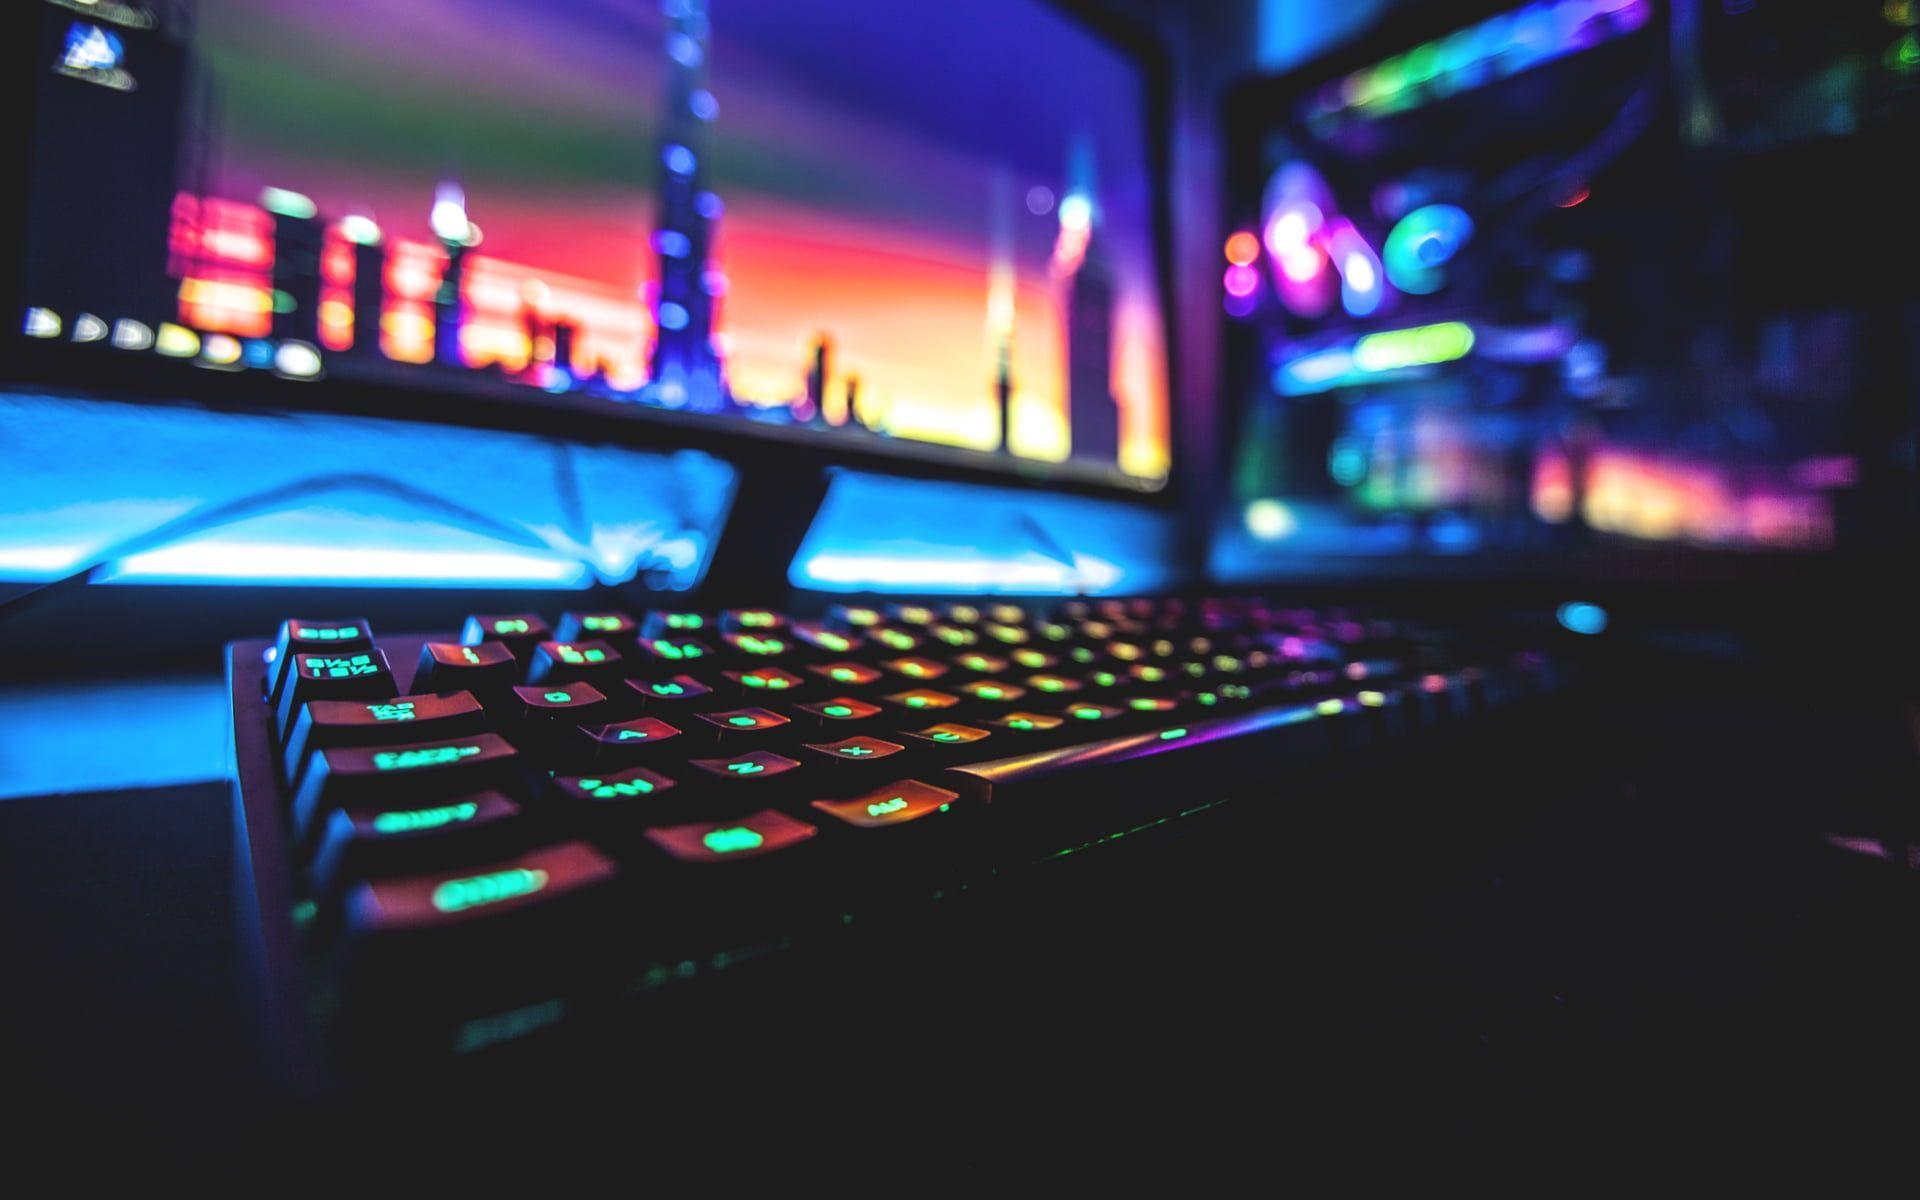 Bàn phím chơi game RGB 1920x1200 màu đen # đầy màu sắc # máy tính # bàn phím PC